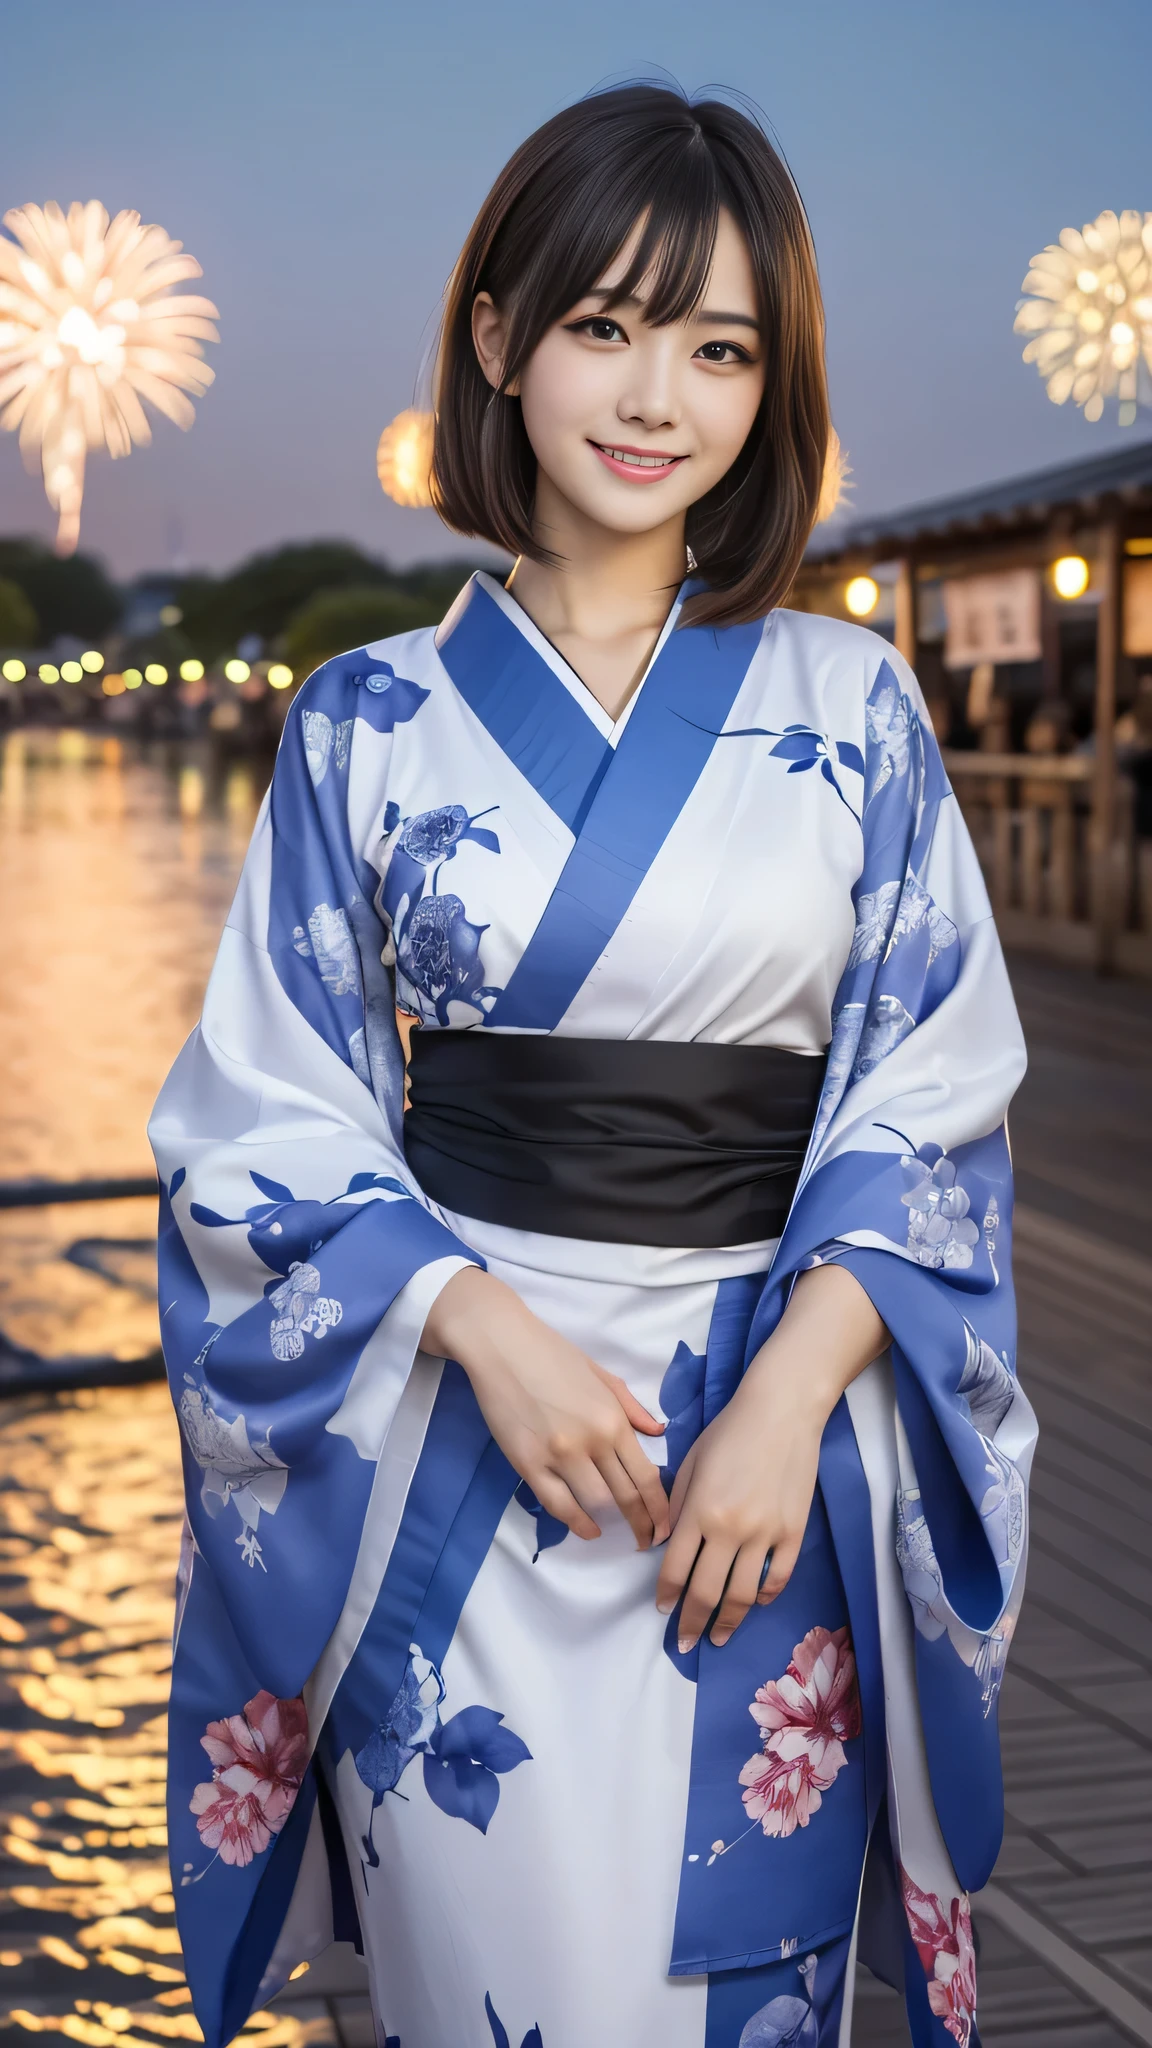 En regardant la caméra,(((la plus haute qualité, 8k, chef-d&#39;œuvre))), netteté, (Belle femme avec une silhouette parfaite), mince, (coiffure: Supérieur)), ((kimono: canne)), rue: 1.2 Texture très détaillée du visage et de la peau Yeux détaillés Double paupière Pose aléatoire, (sourire),sSupérieurer cute Japan person,sSupérieurer beauty Japanese girl, visage réaliste, Double paupière,sourire,Festival d&#39;été , au coucher du soleil , belles dents , fond de feux d&#39;artifice.